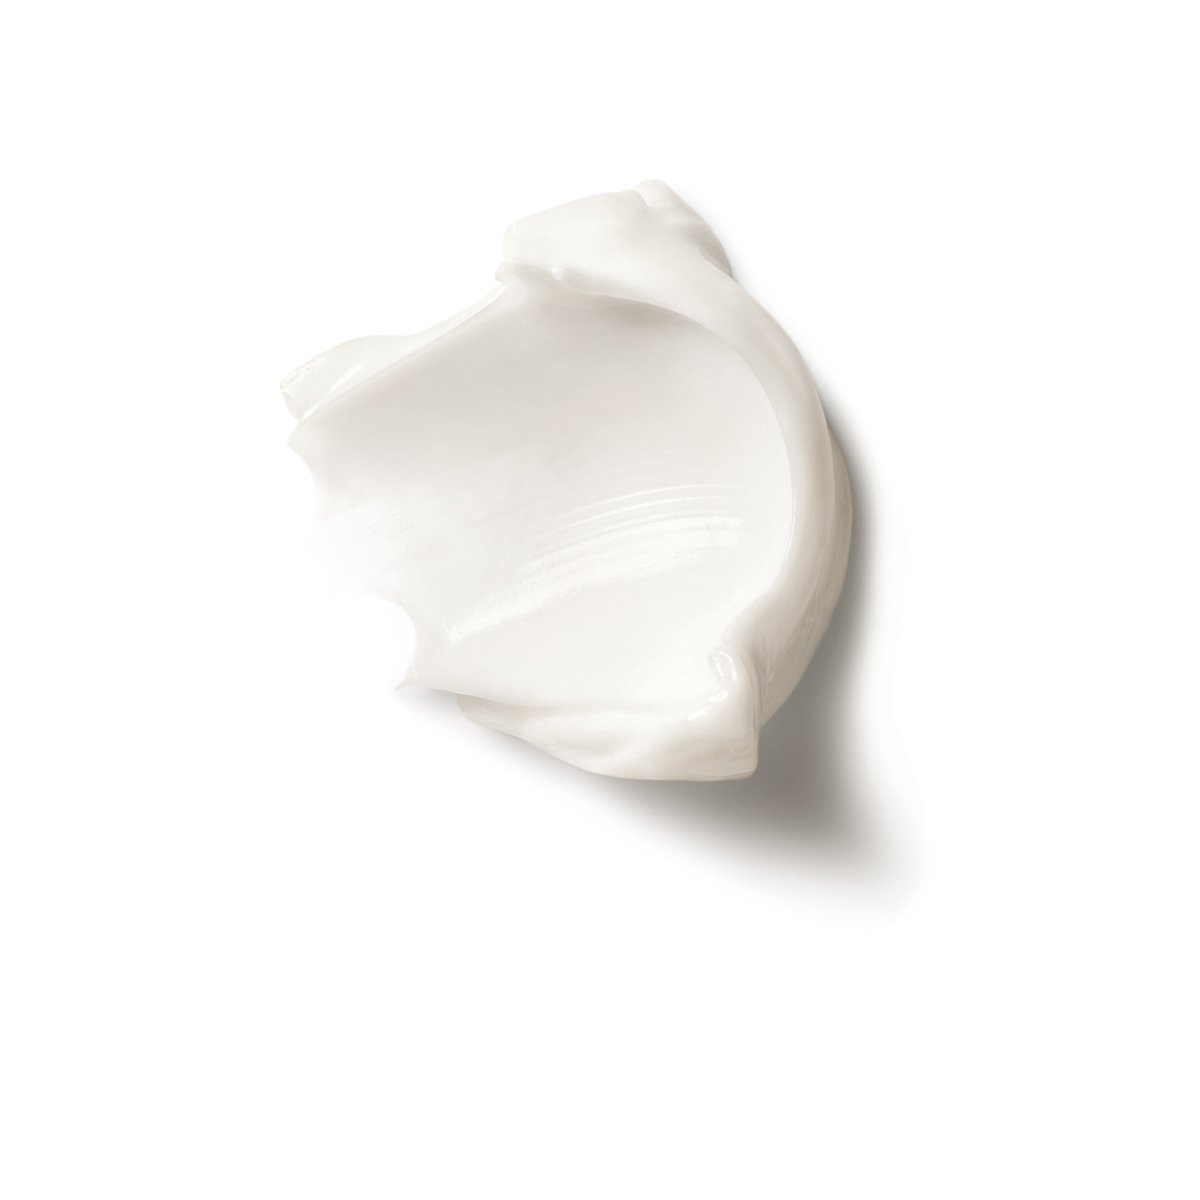 La Roche Posay ProduktSide Nutritic Intense Rich Cream Texture